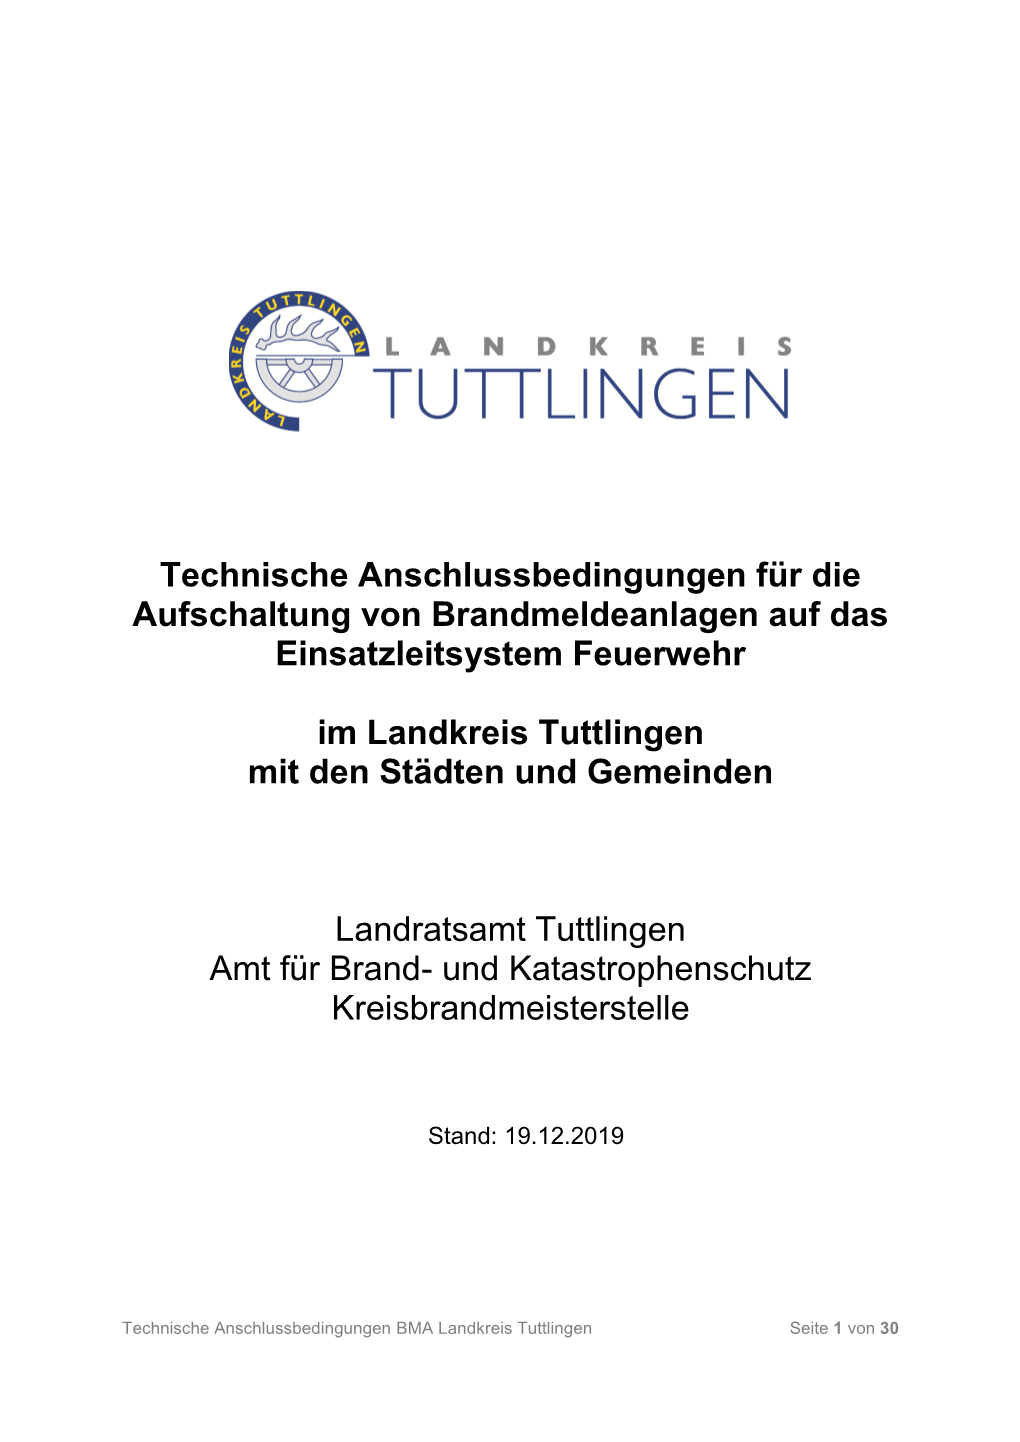 TAB Tuttlingen Landkreis 12.2019